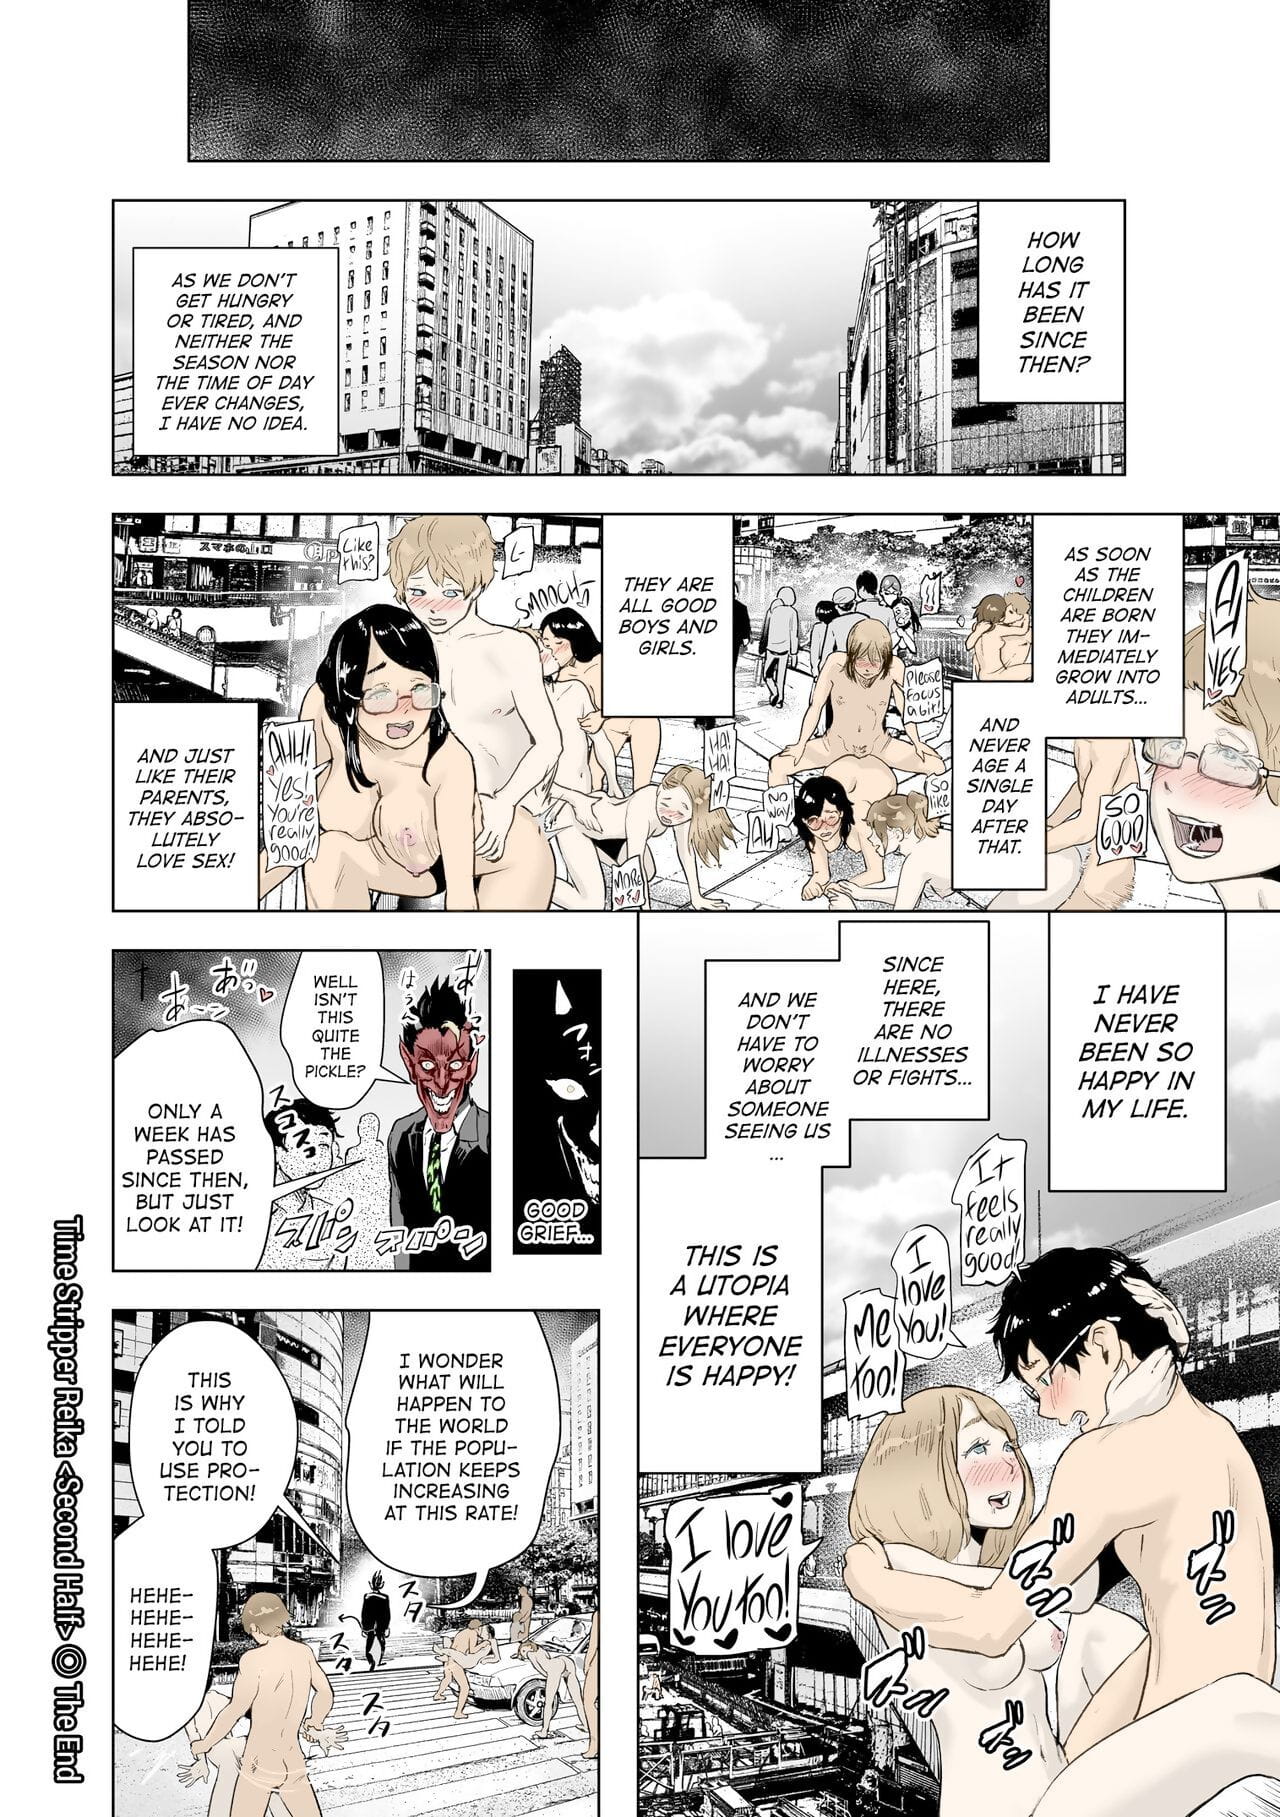 gesundheit horário stripper Reika #futsuu nenhum onnanoko inglês atf digital colorido parte 3